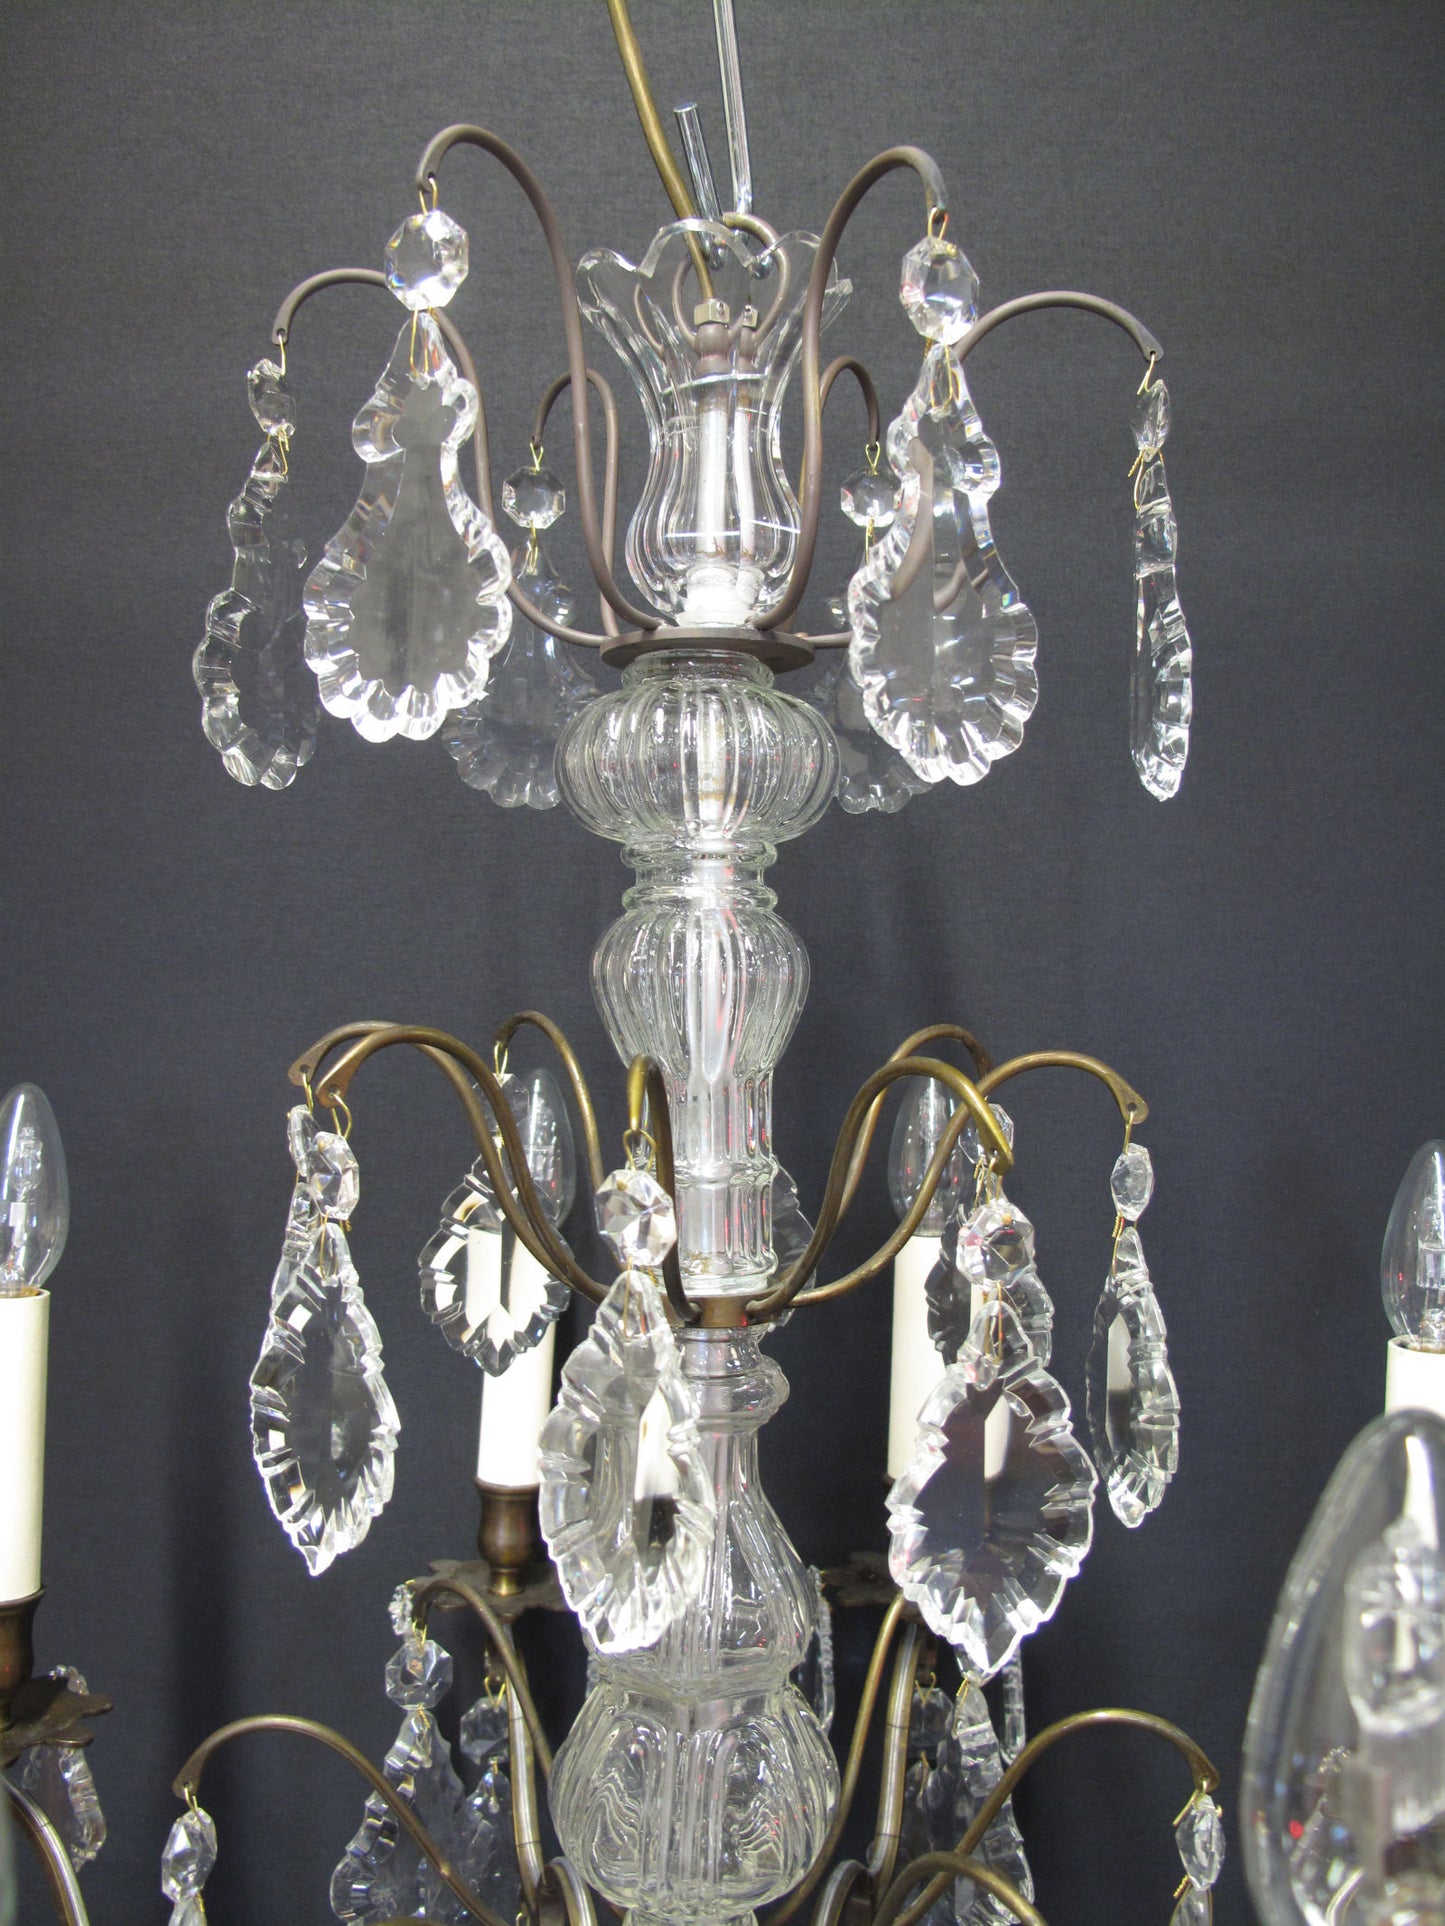 top half of chandelier